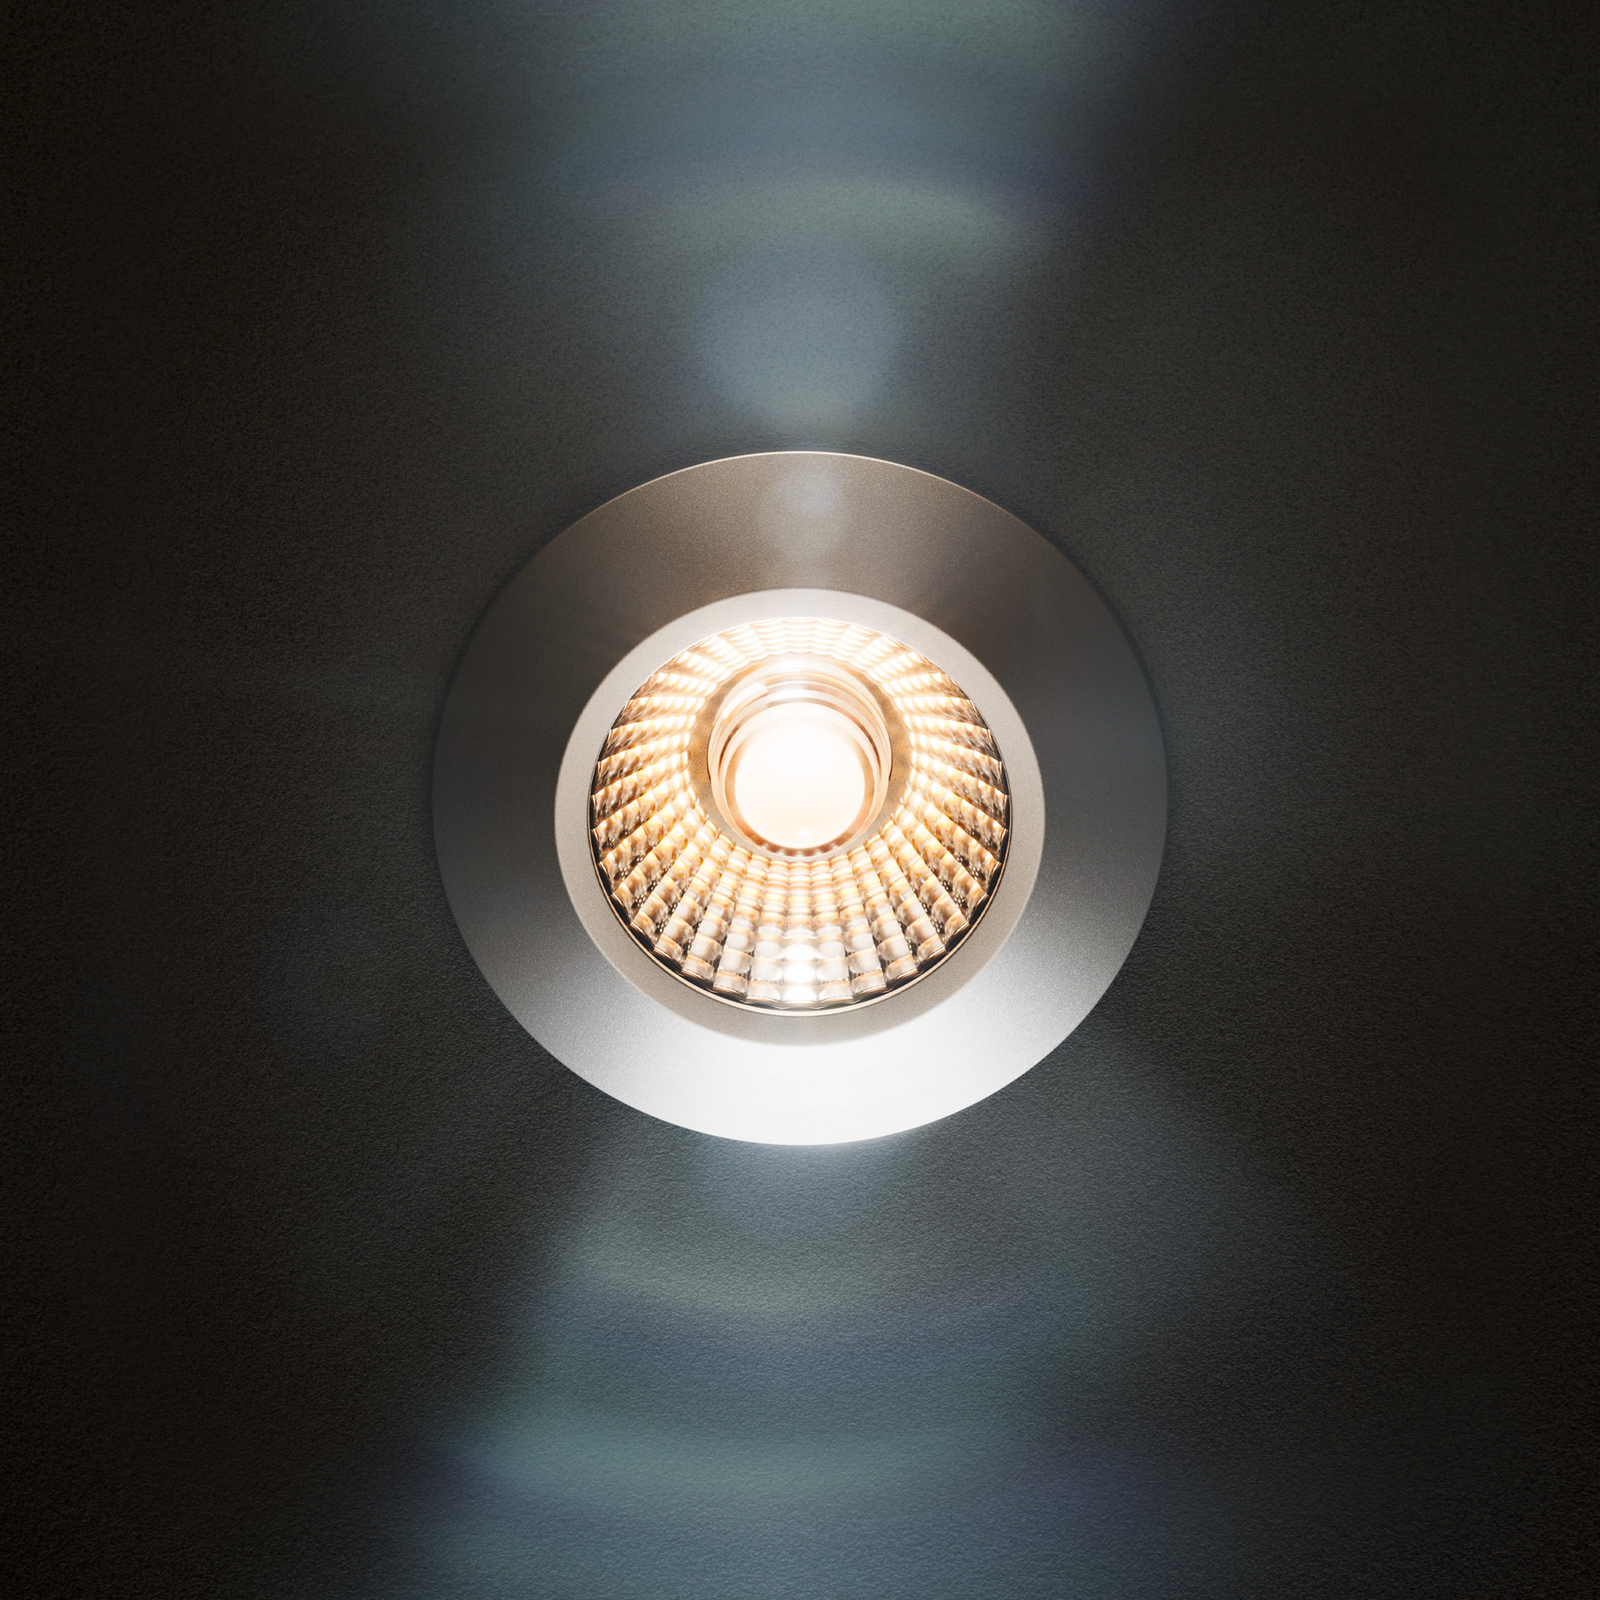 LED spot da incasso a soffitto Diled, Ø 6,7 cm, 3.000 K, bianco